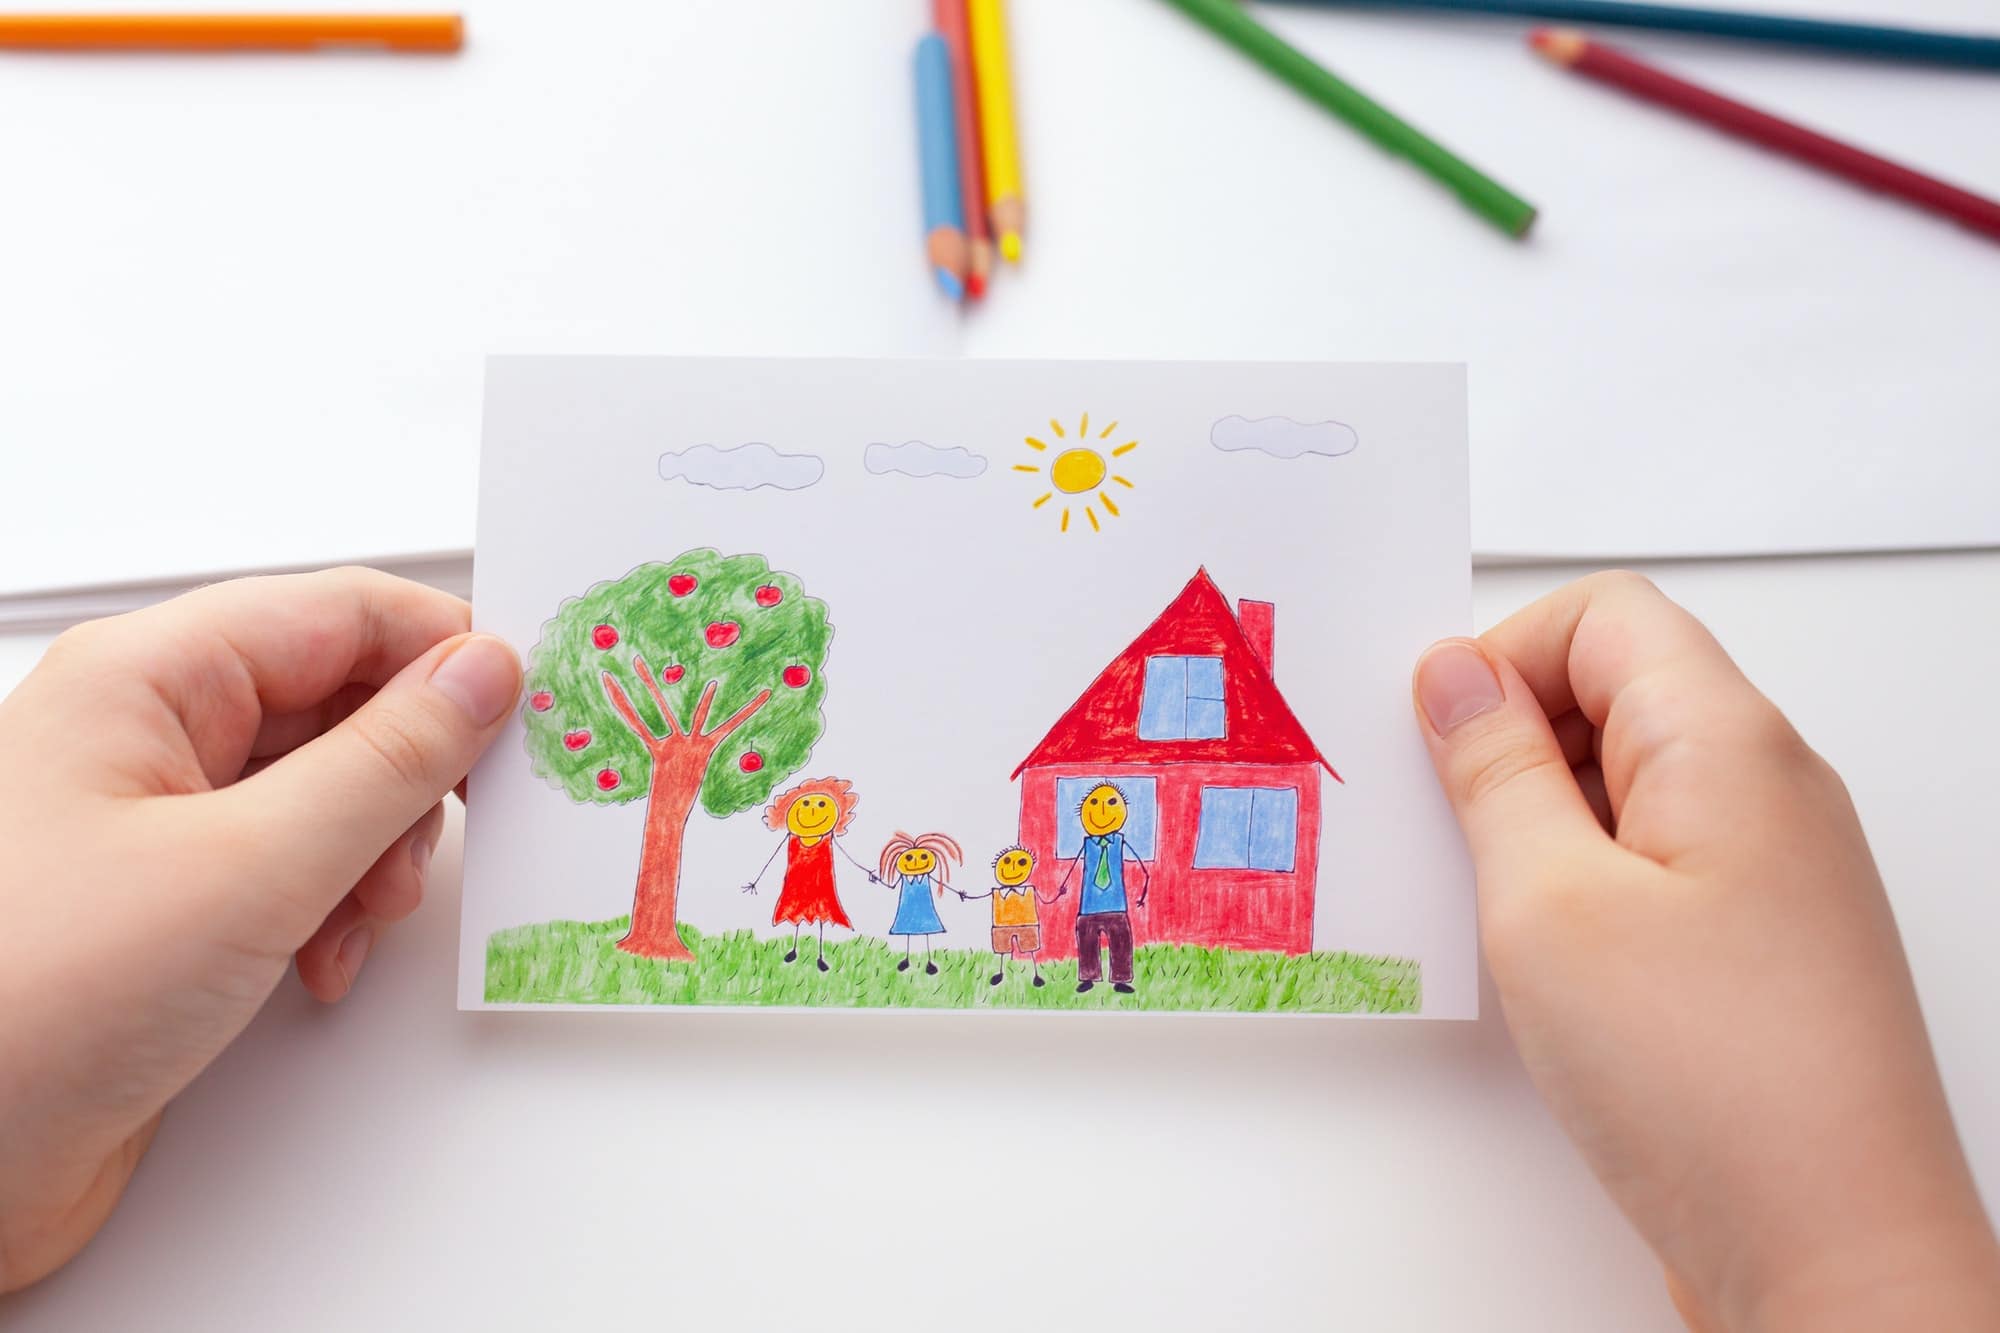 Anak memegang gambar dengan keluarga bahagia dan pokok epal dan sebuah rumah